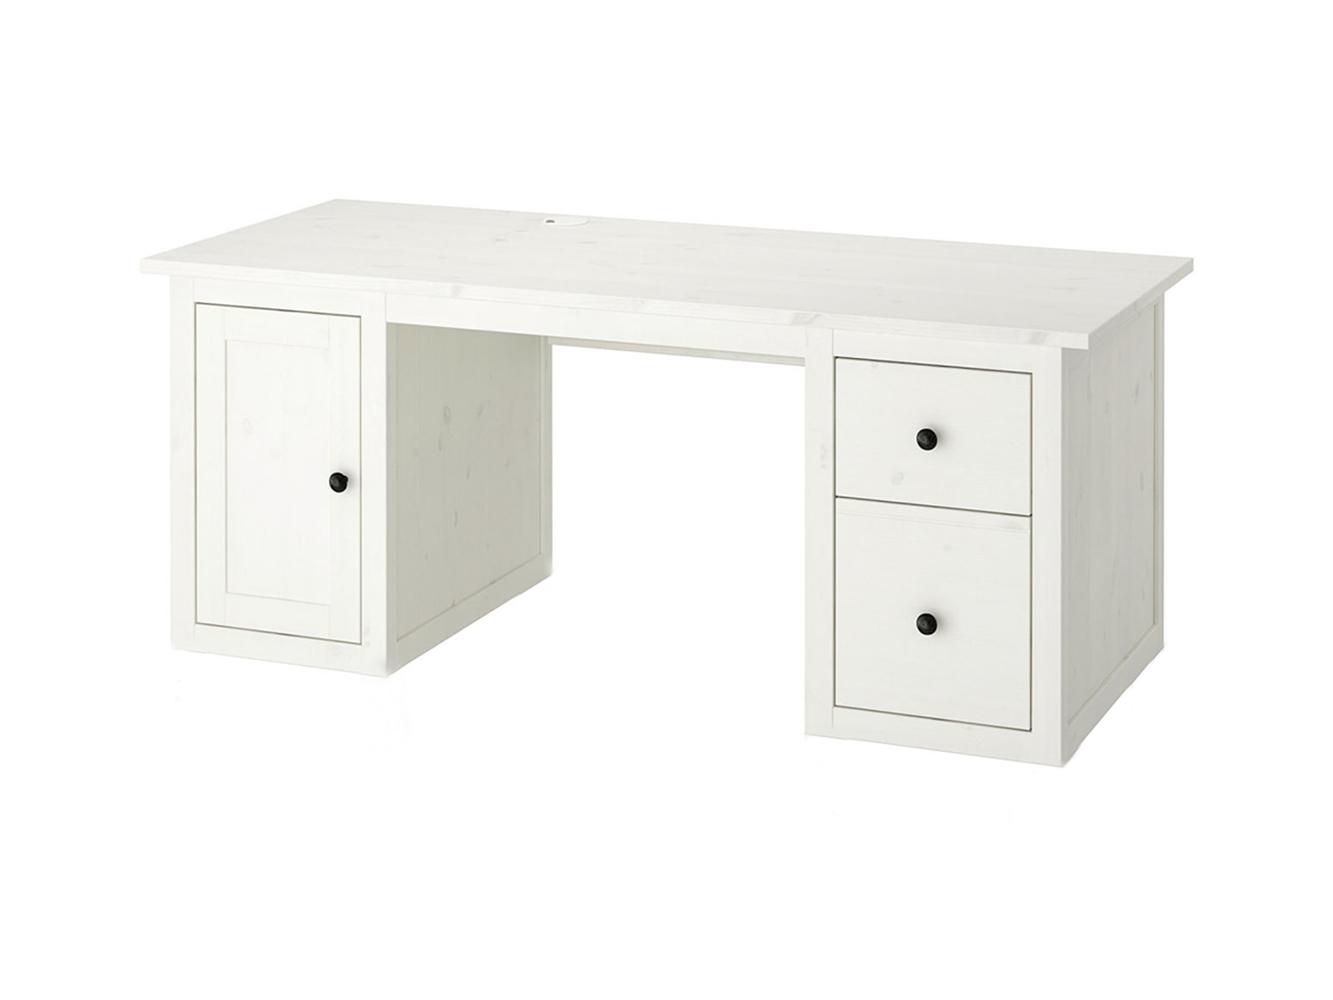 Письменный стол Хемнес 313 white ИКЕА (IKEA) изображение товара